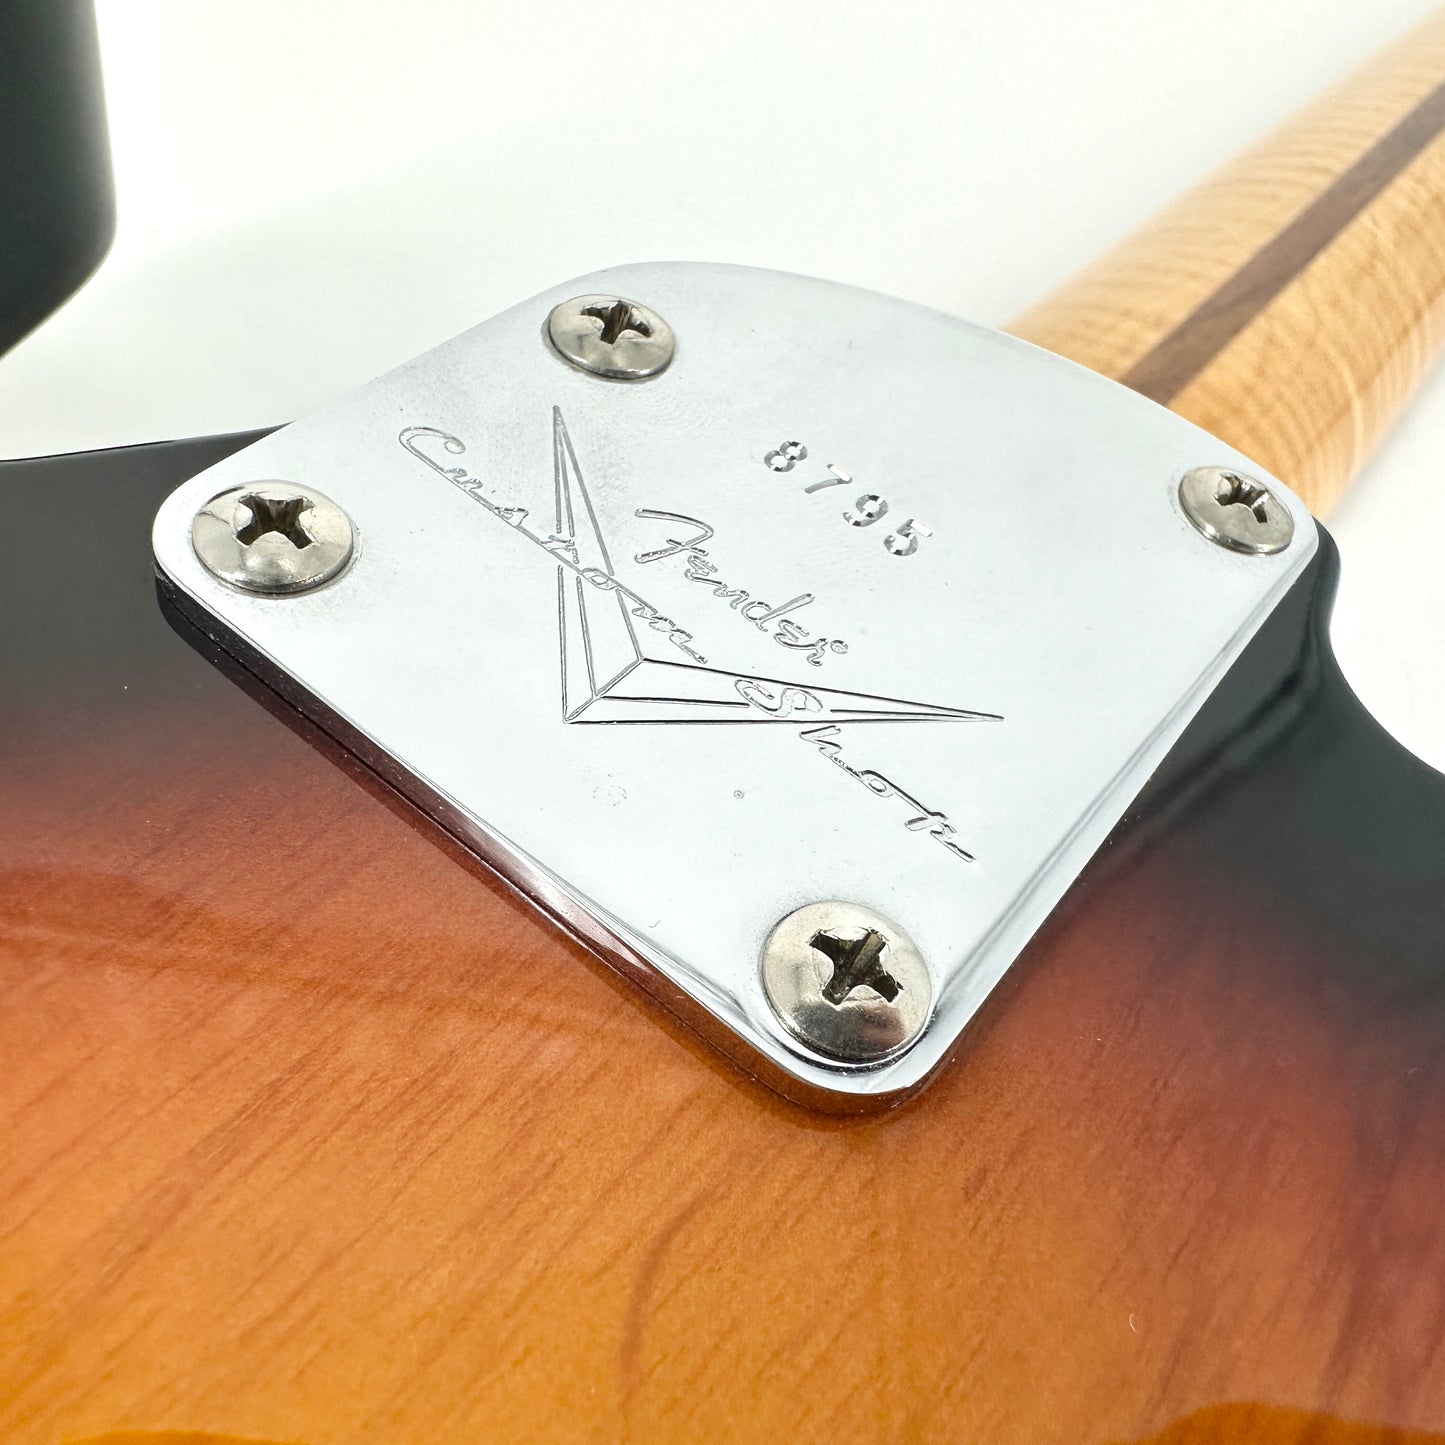 2013 Fender Custom Shop Deluxe Telecaster - 3 Tone Sunburst